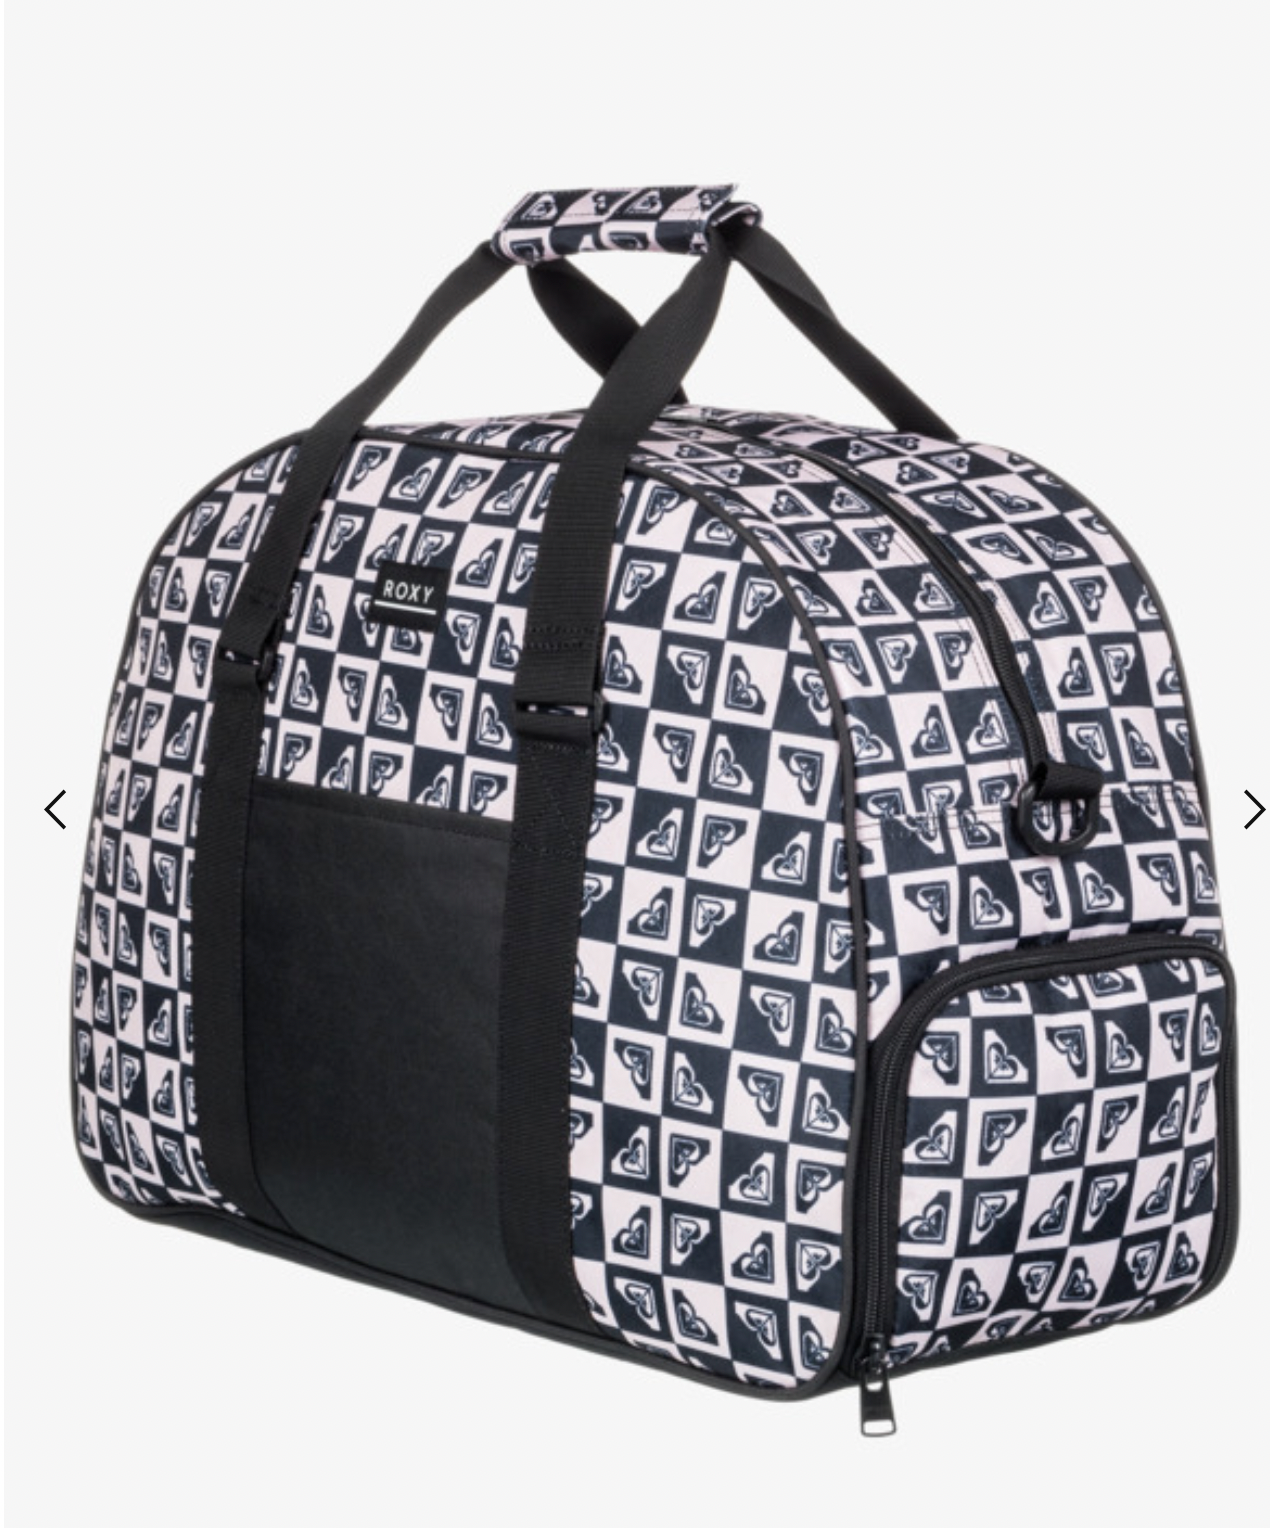 ROXY Feel Happy 35L - Sports Duffle Bag for Women